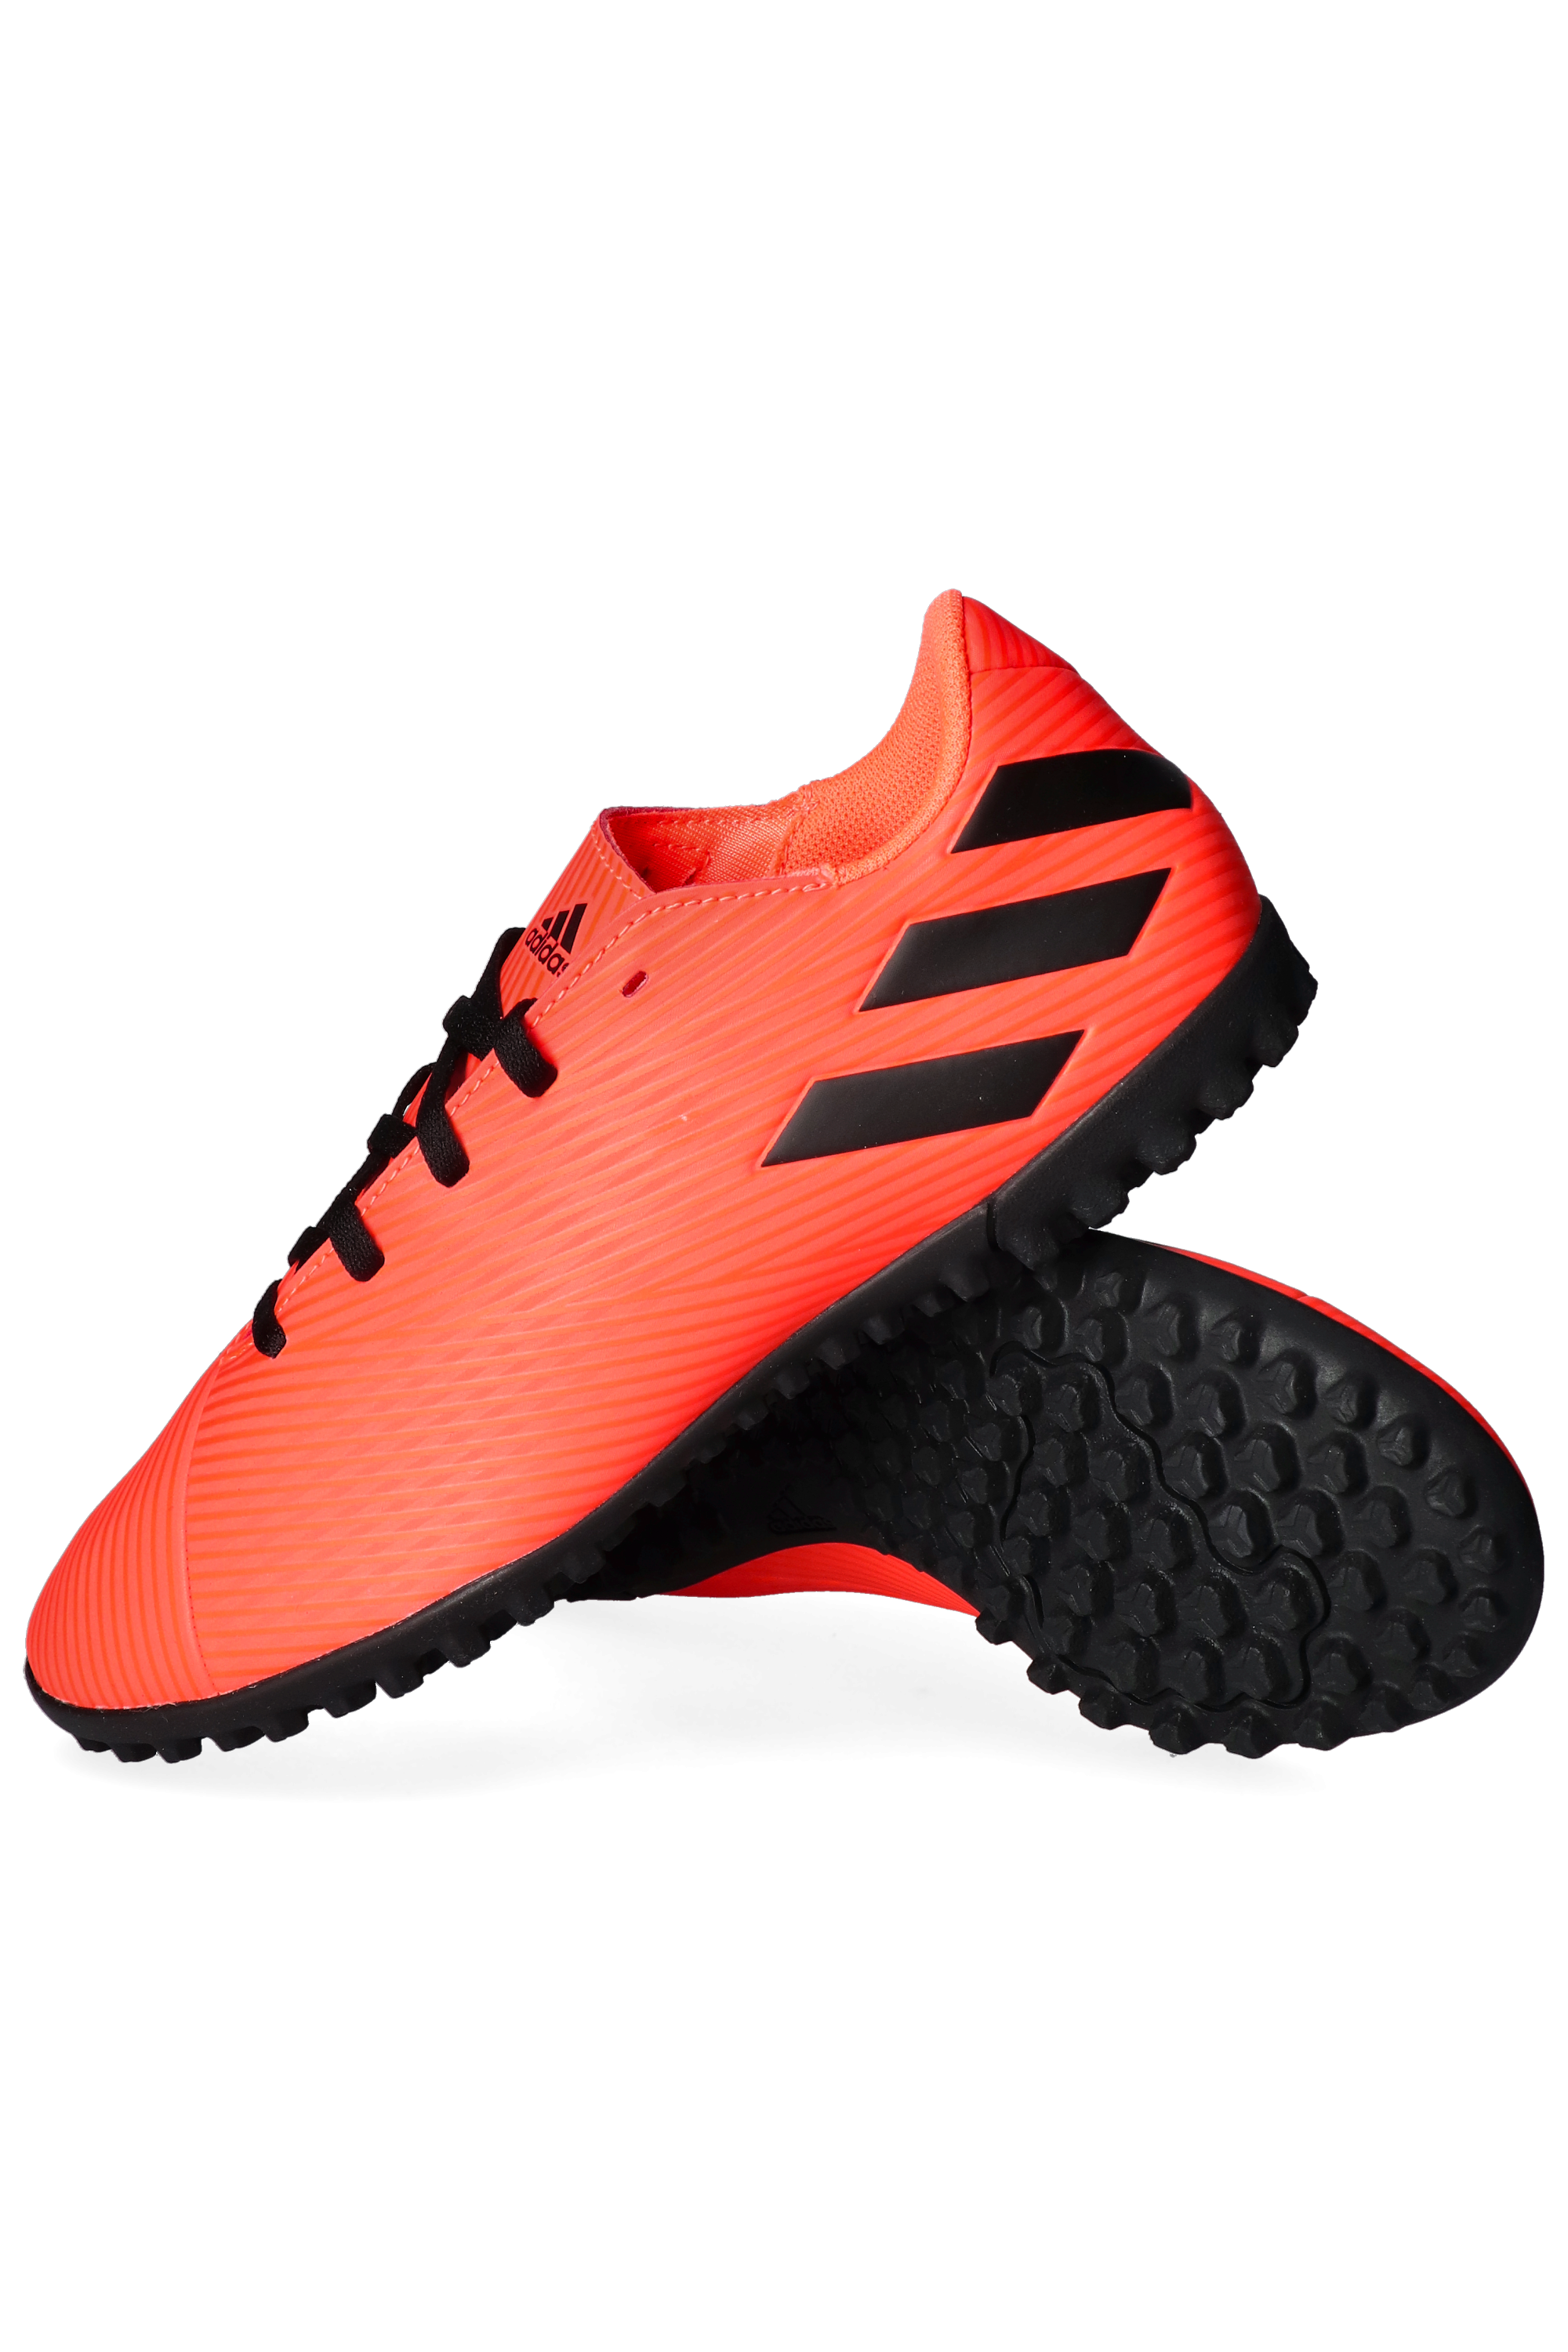 batalla Mendigar diccionario adidas Nemeziz 19.4 TF Turf Boots | R-GOL.com - Football boots & equipment